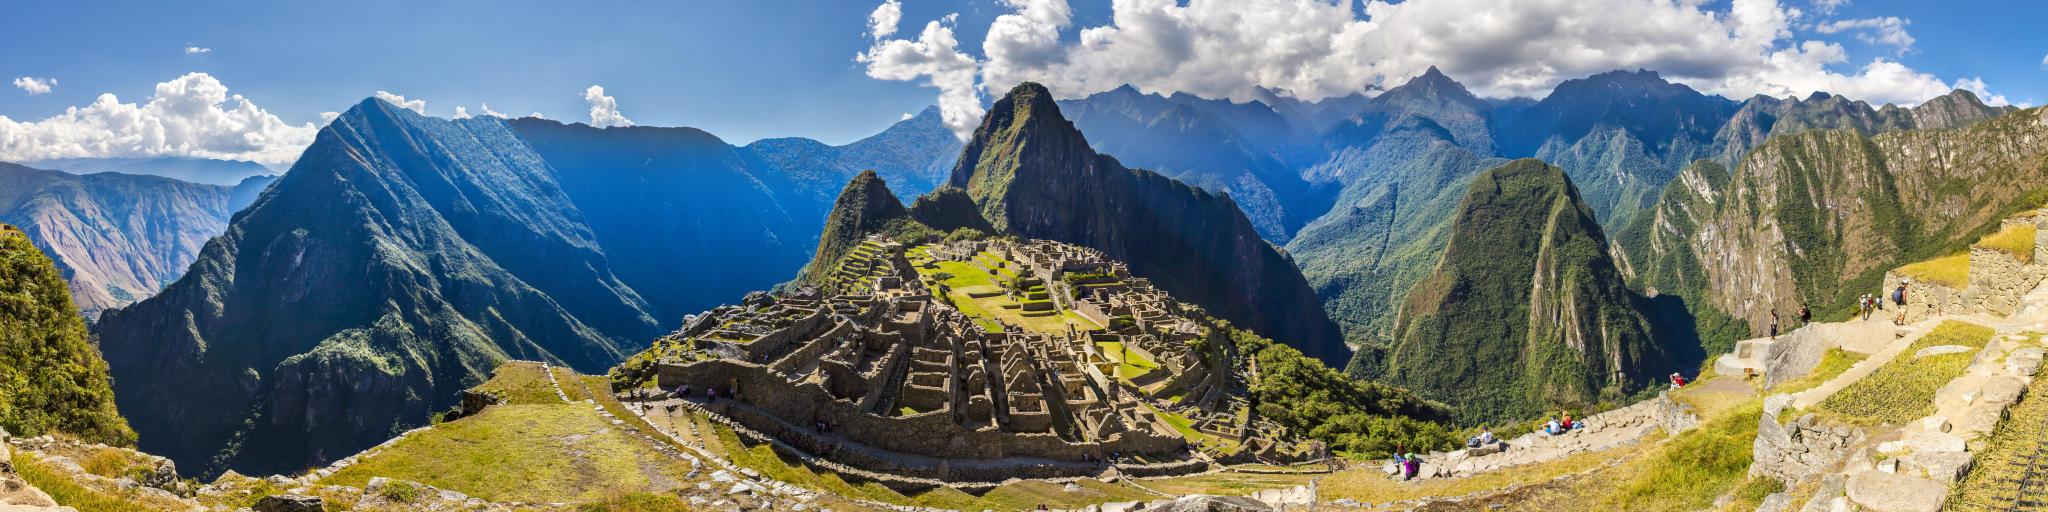 Machu Picchu, Peru,South America